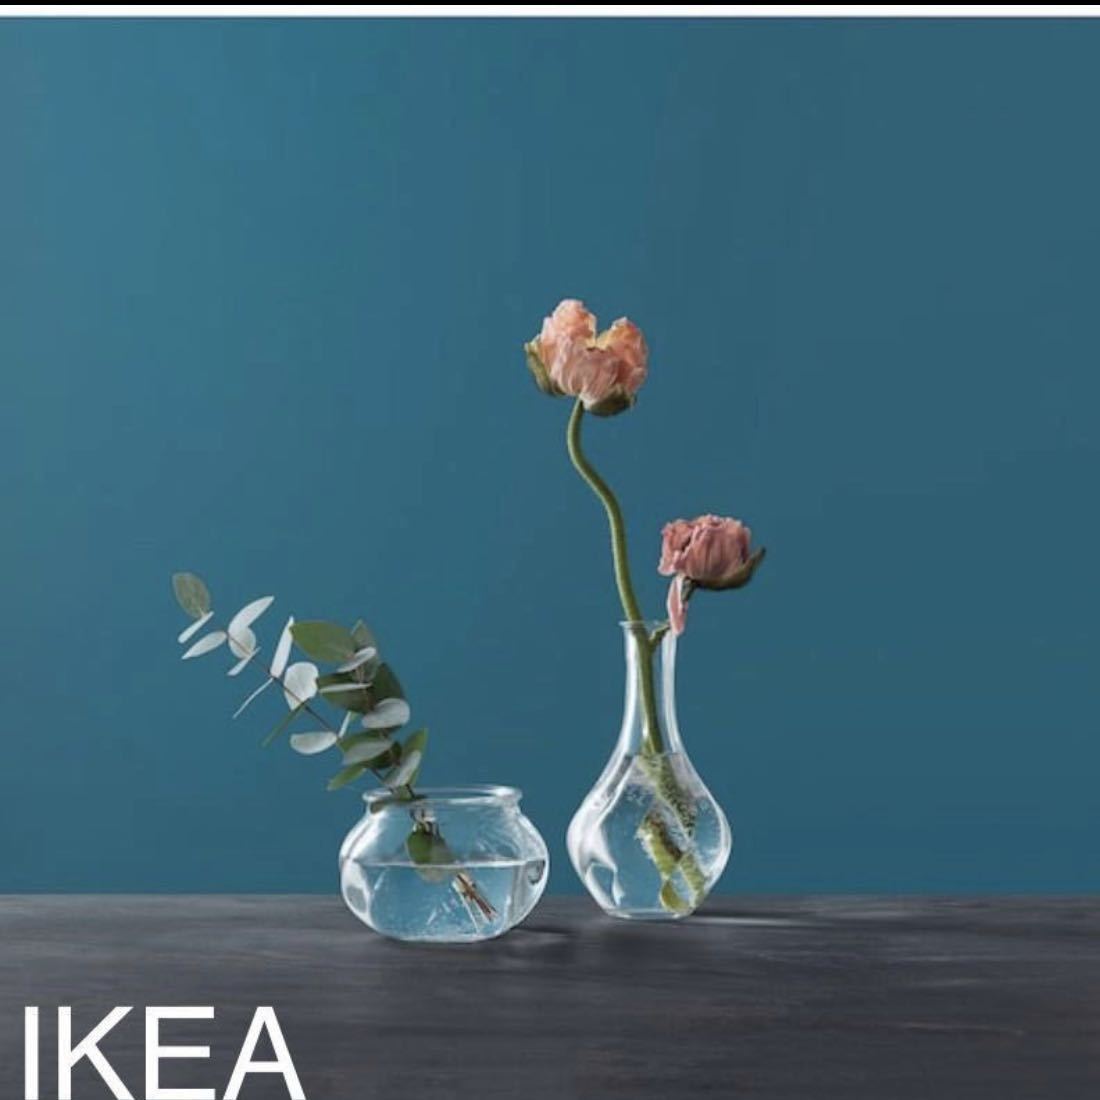  Ikea IKEA ваза 2 шт. комплект цветок основа crystal прозрачный стекло дуть . стекло не использовался прекрасный товар интерьер смешанные товары 